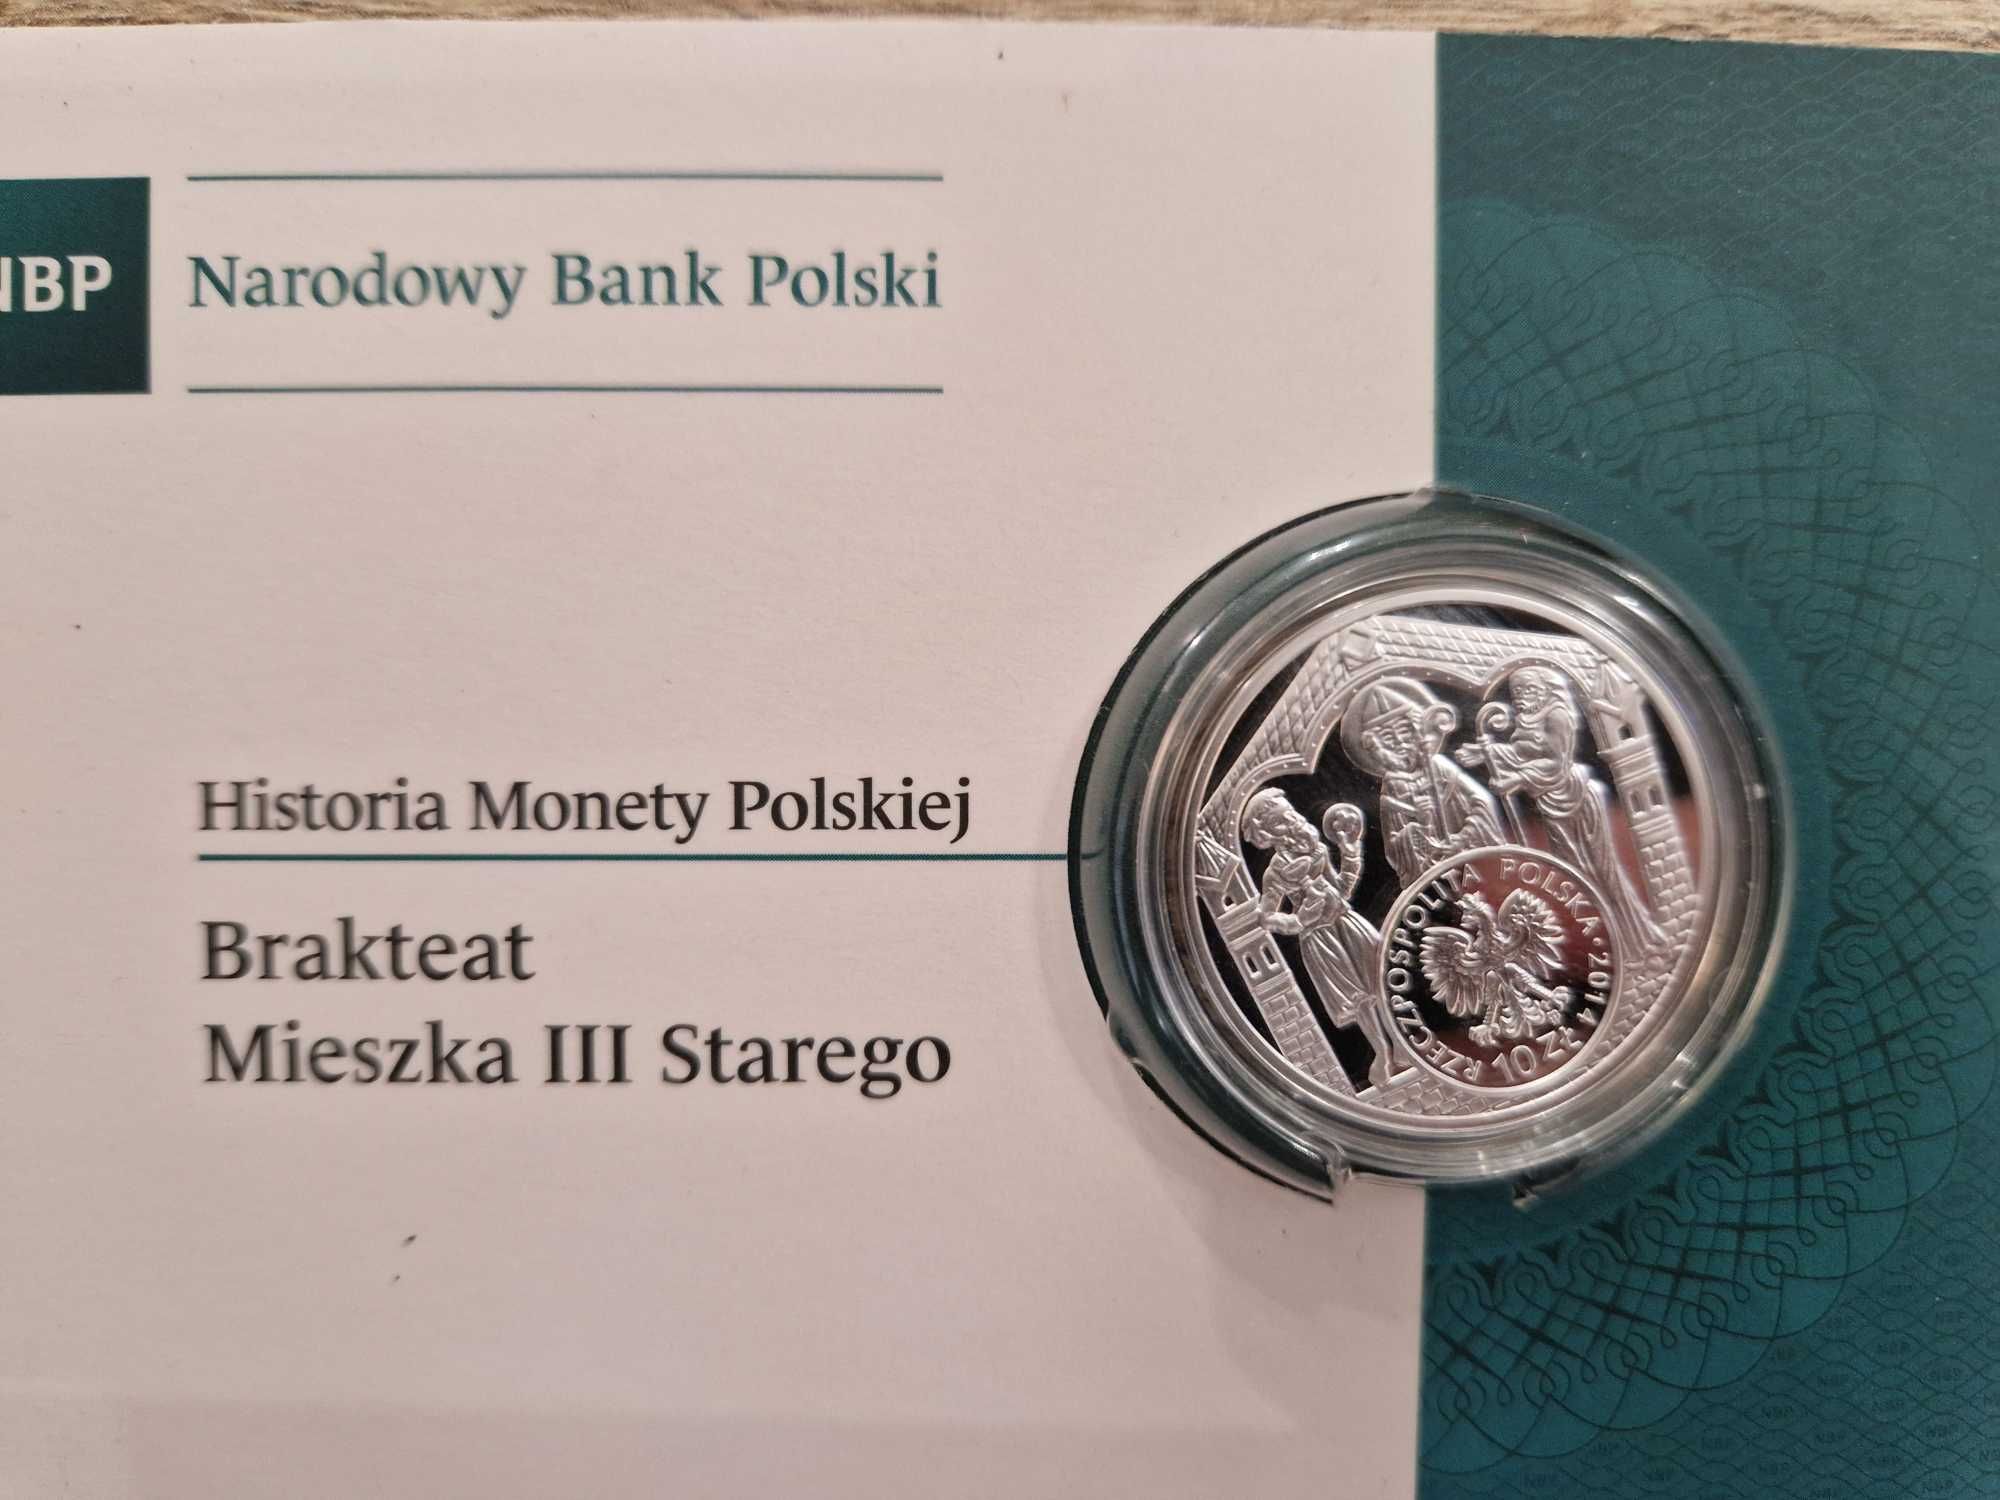 10 zł Brakteat Mieszka III Starego z Serii "Historia Monety Polskiej"